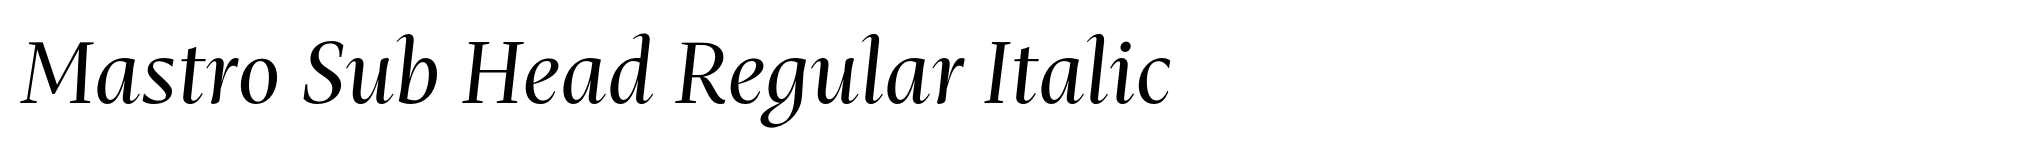 Mastro Sub Head Regular Italic image